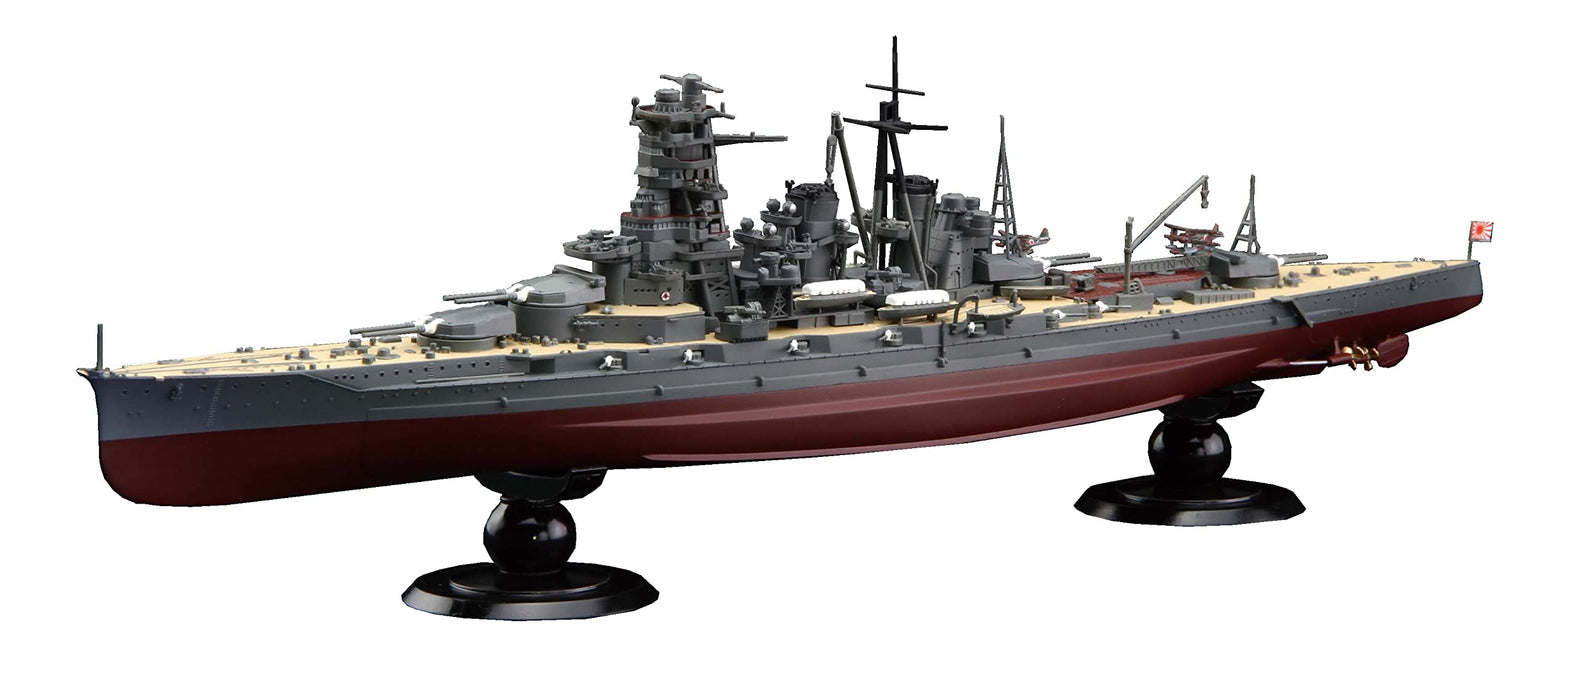 FUJIMI 1/700 Japanese Navy Battleship Kongo 1945 Full Hull Plastic Model